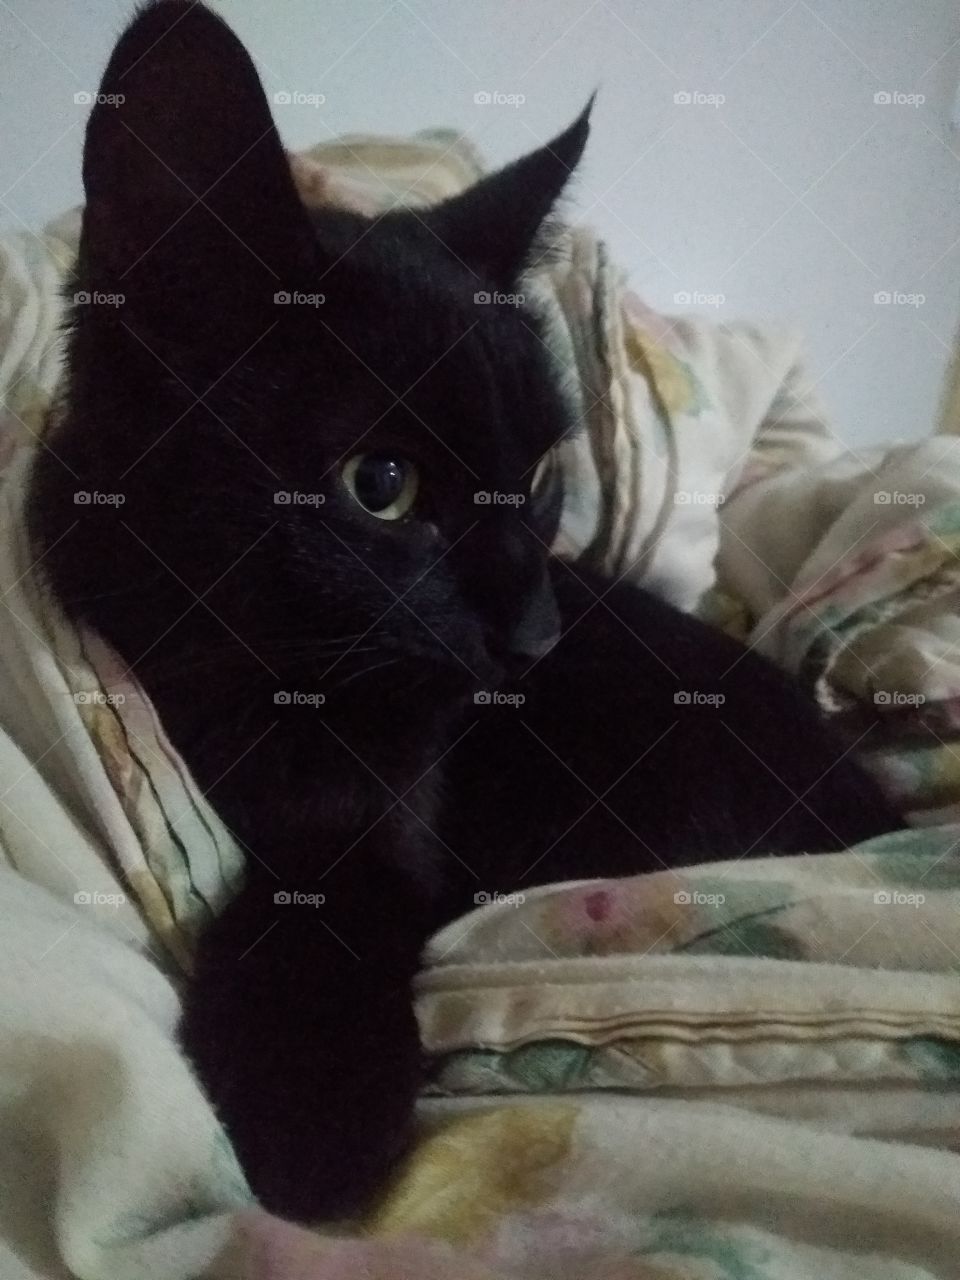 My cat in my blanket. I love her. How nota to love? / Minha gata no meu cobertor. Como não amar?